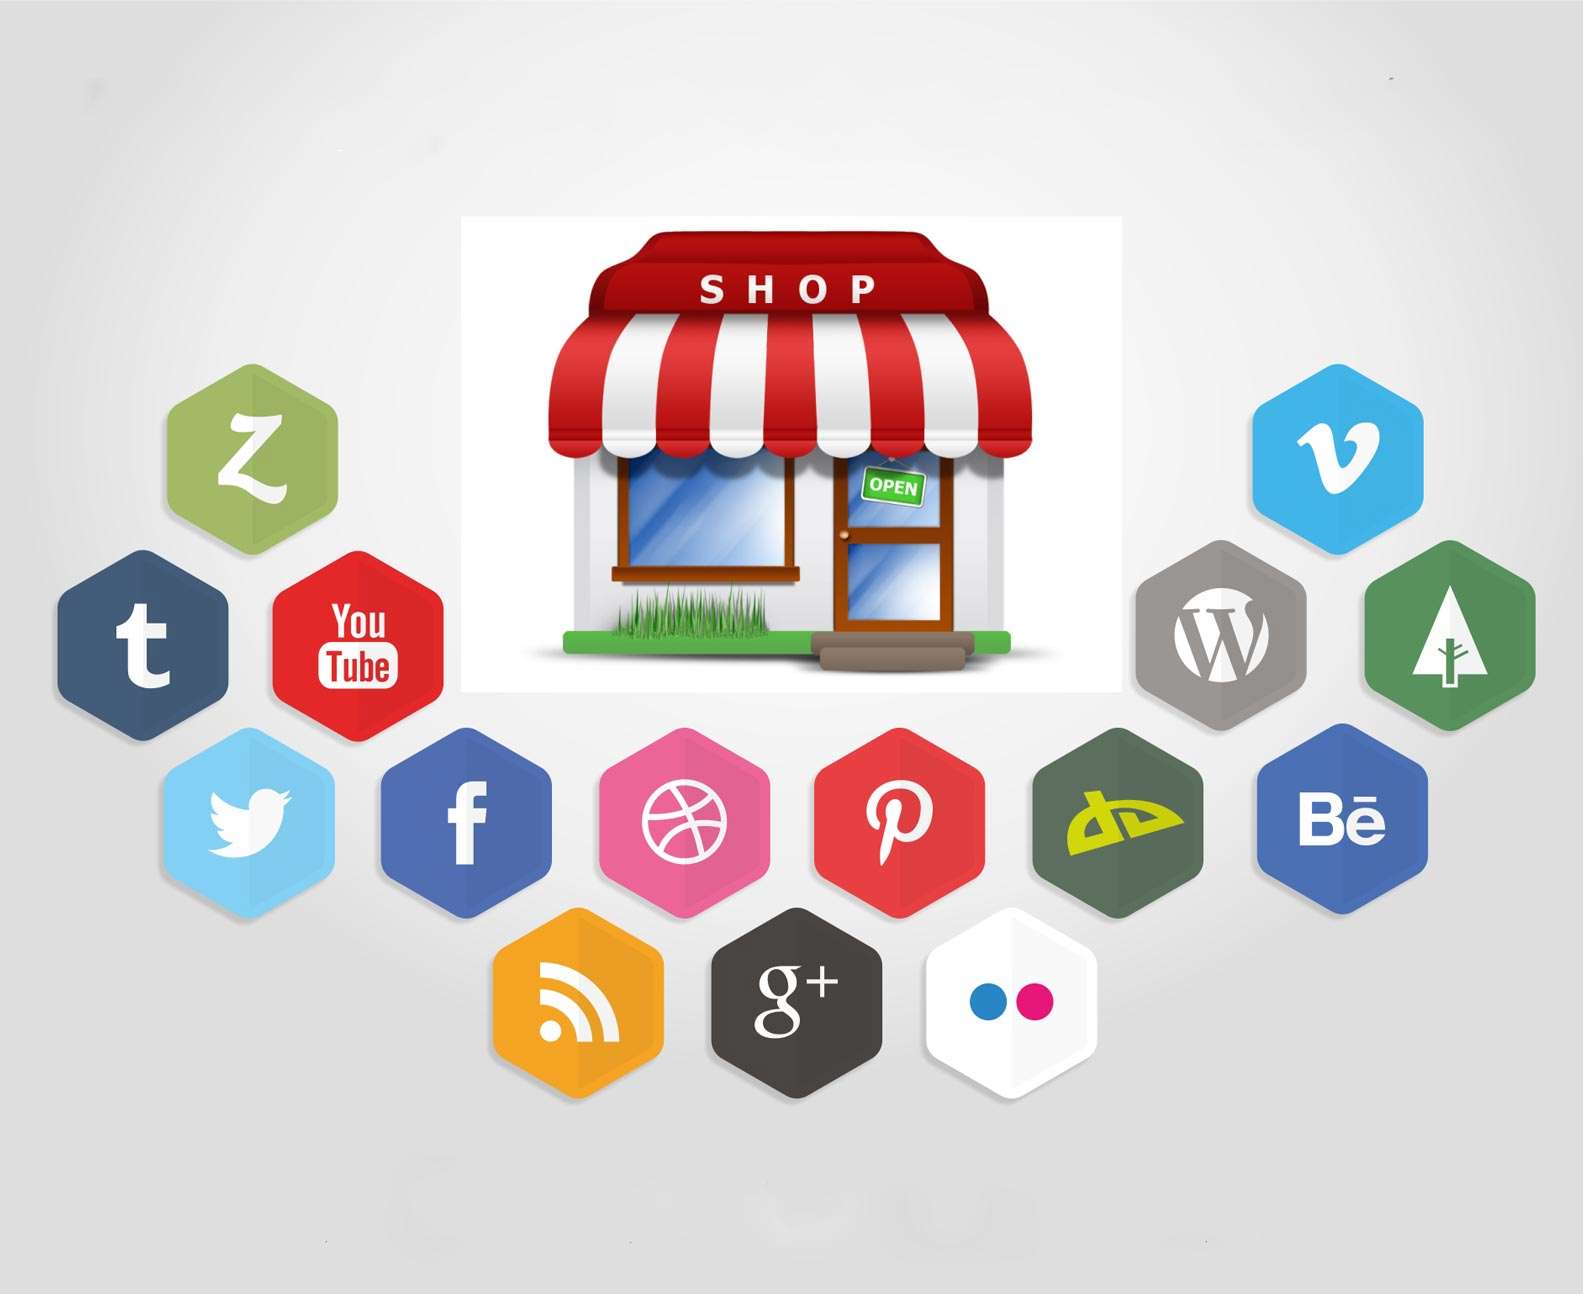 معرفی سئو ( SEO ) وبازاریابی از طریق رسانه های اجتماعی ( SMM ) برای صاحبان کسب و کارهای کوچک